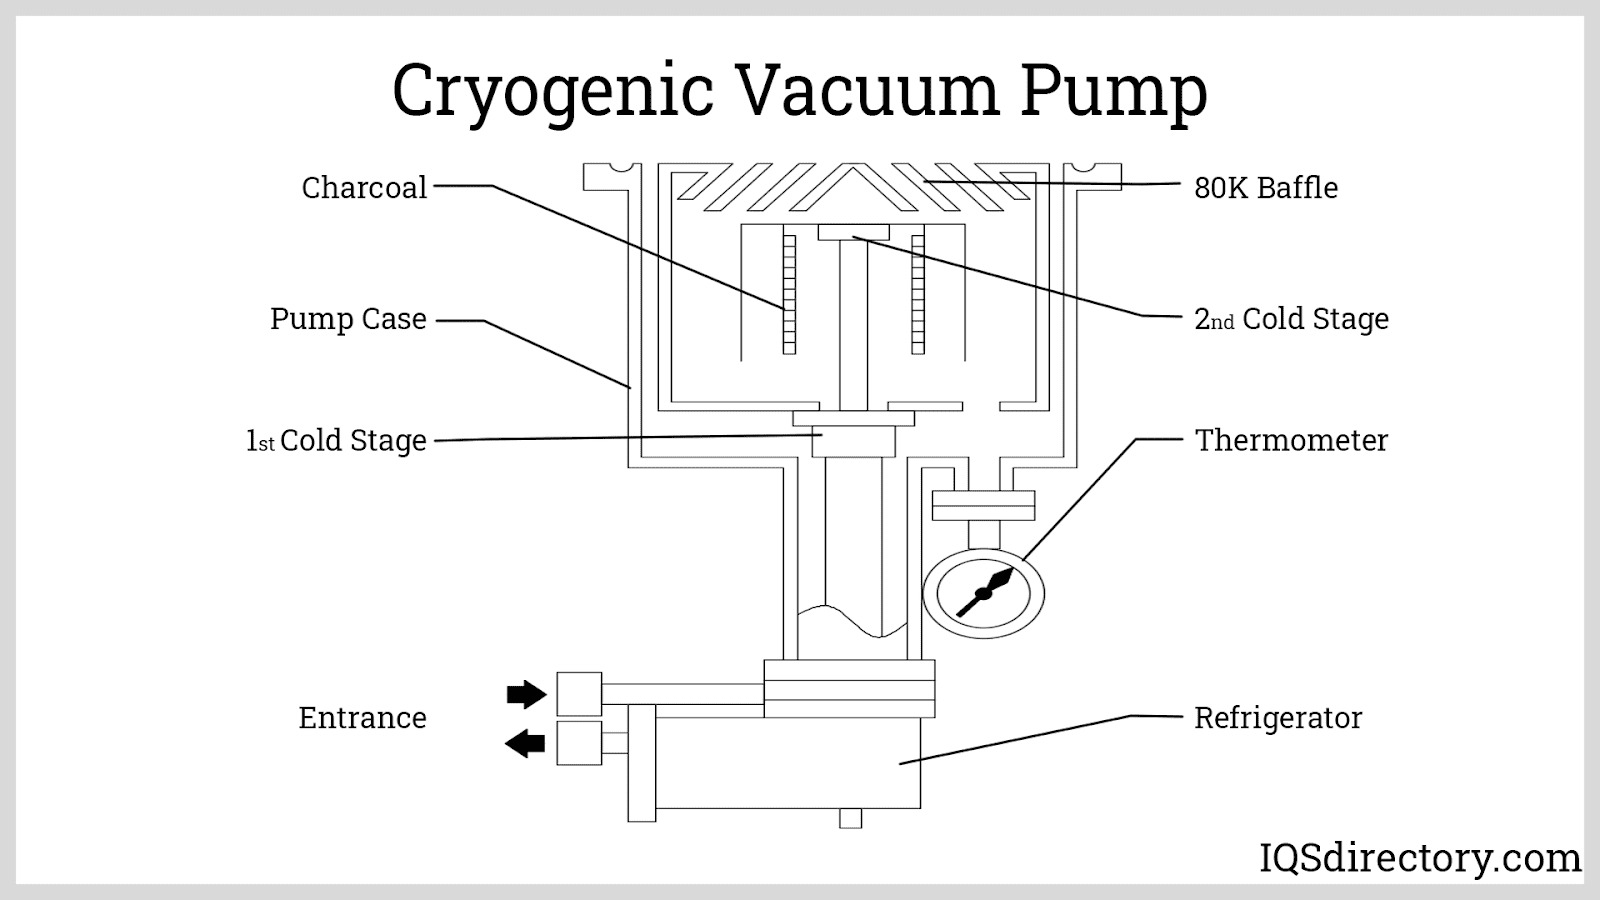 Cryogenic Vacuum Pump